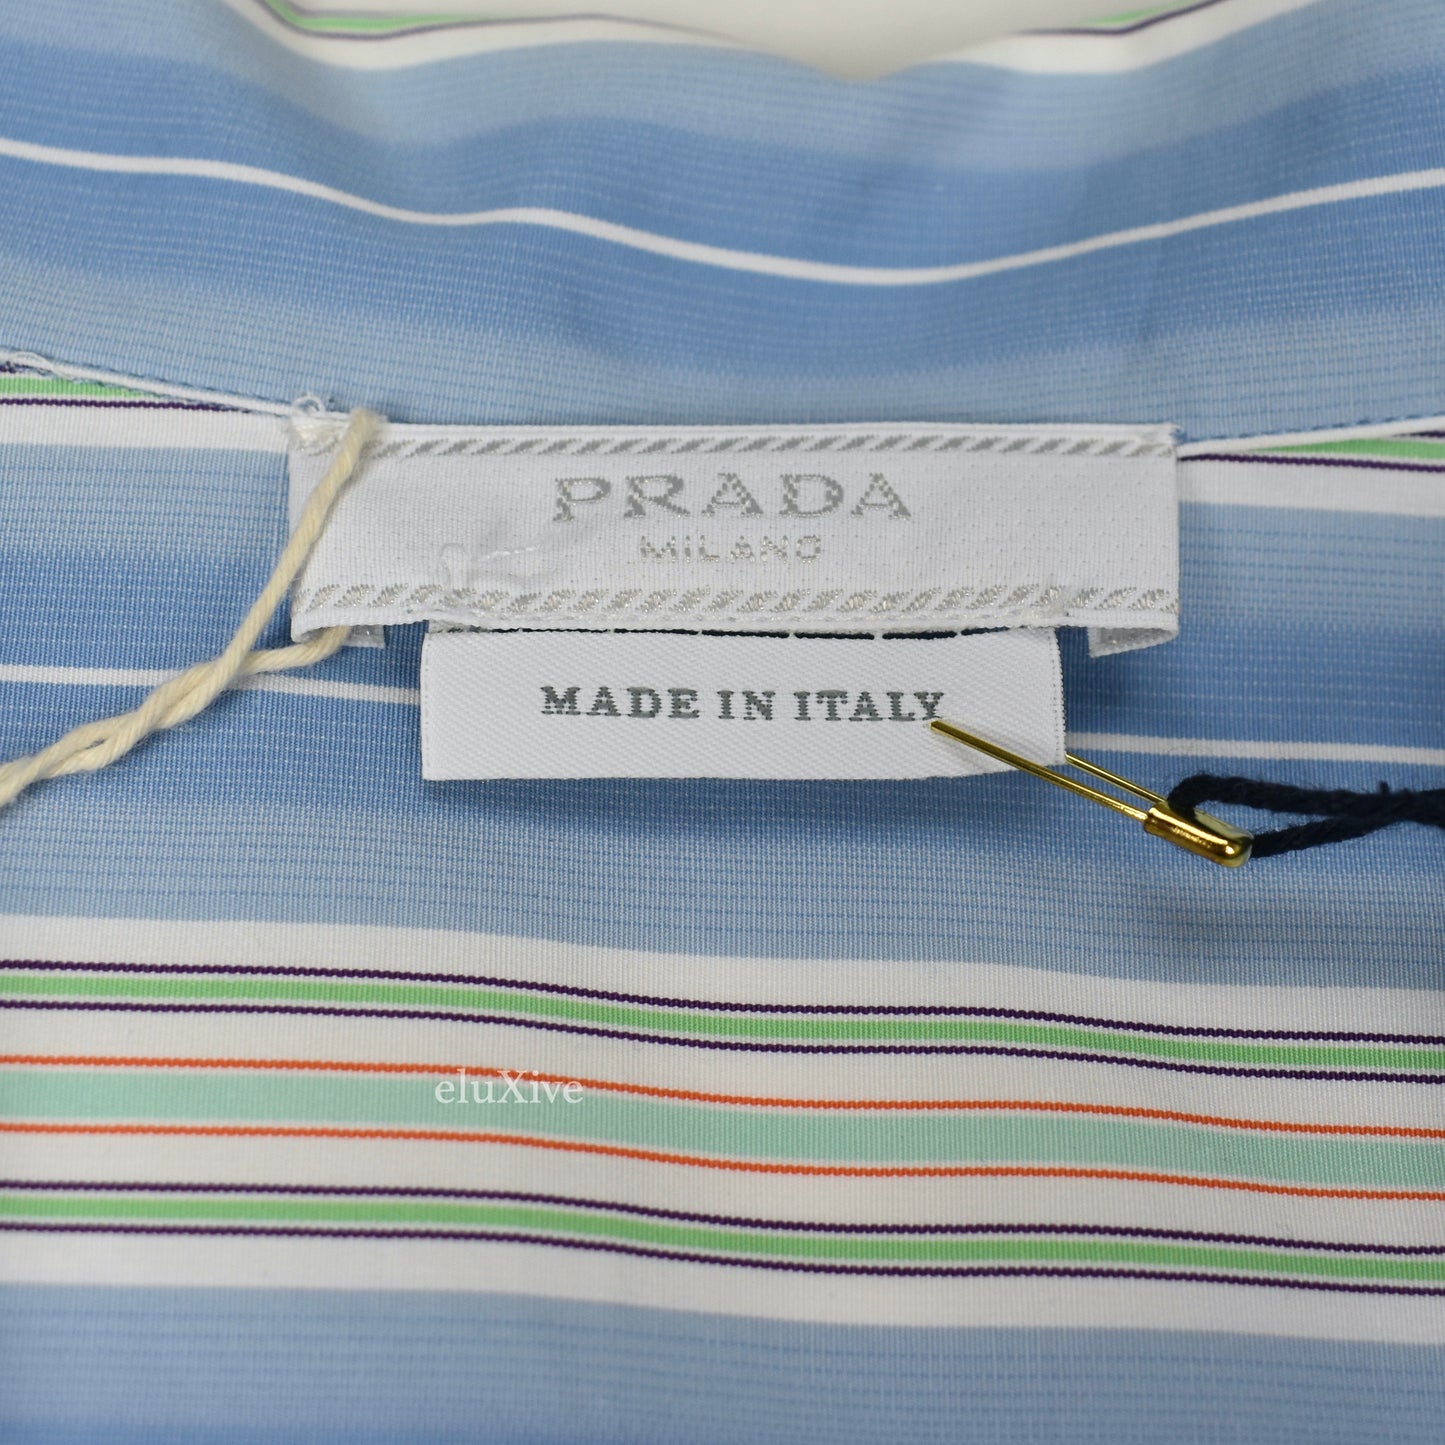 Prada - Blue Striped S/S Button Down Club Shirt